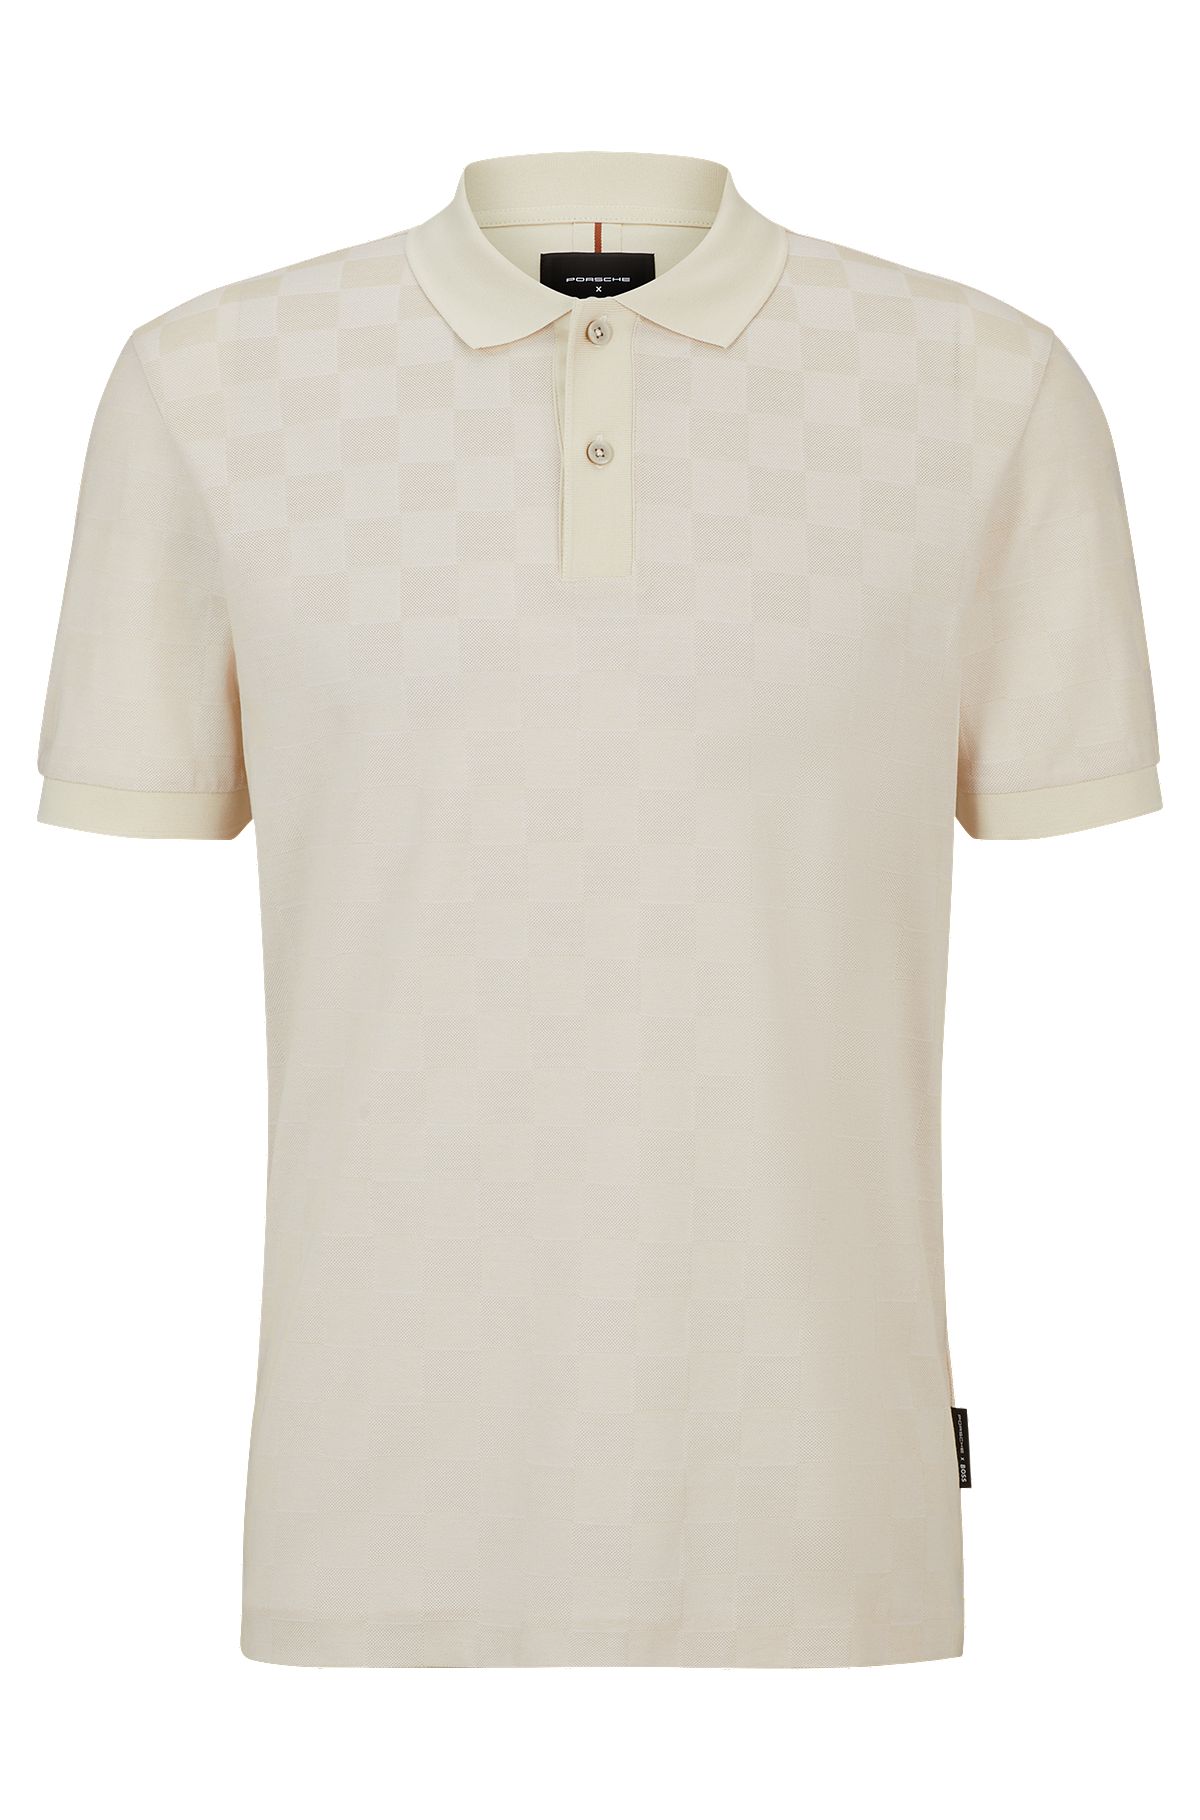 LOUIS VUITTON MEN'S T Shirt Size Large $248.00 - PicClick